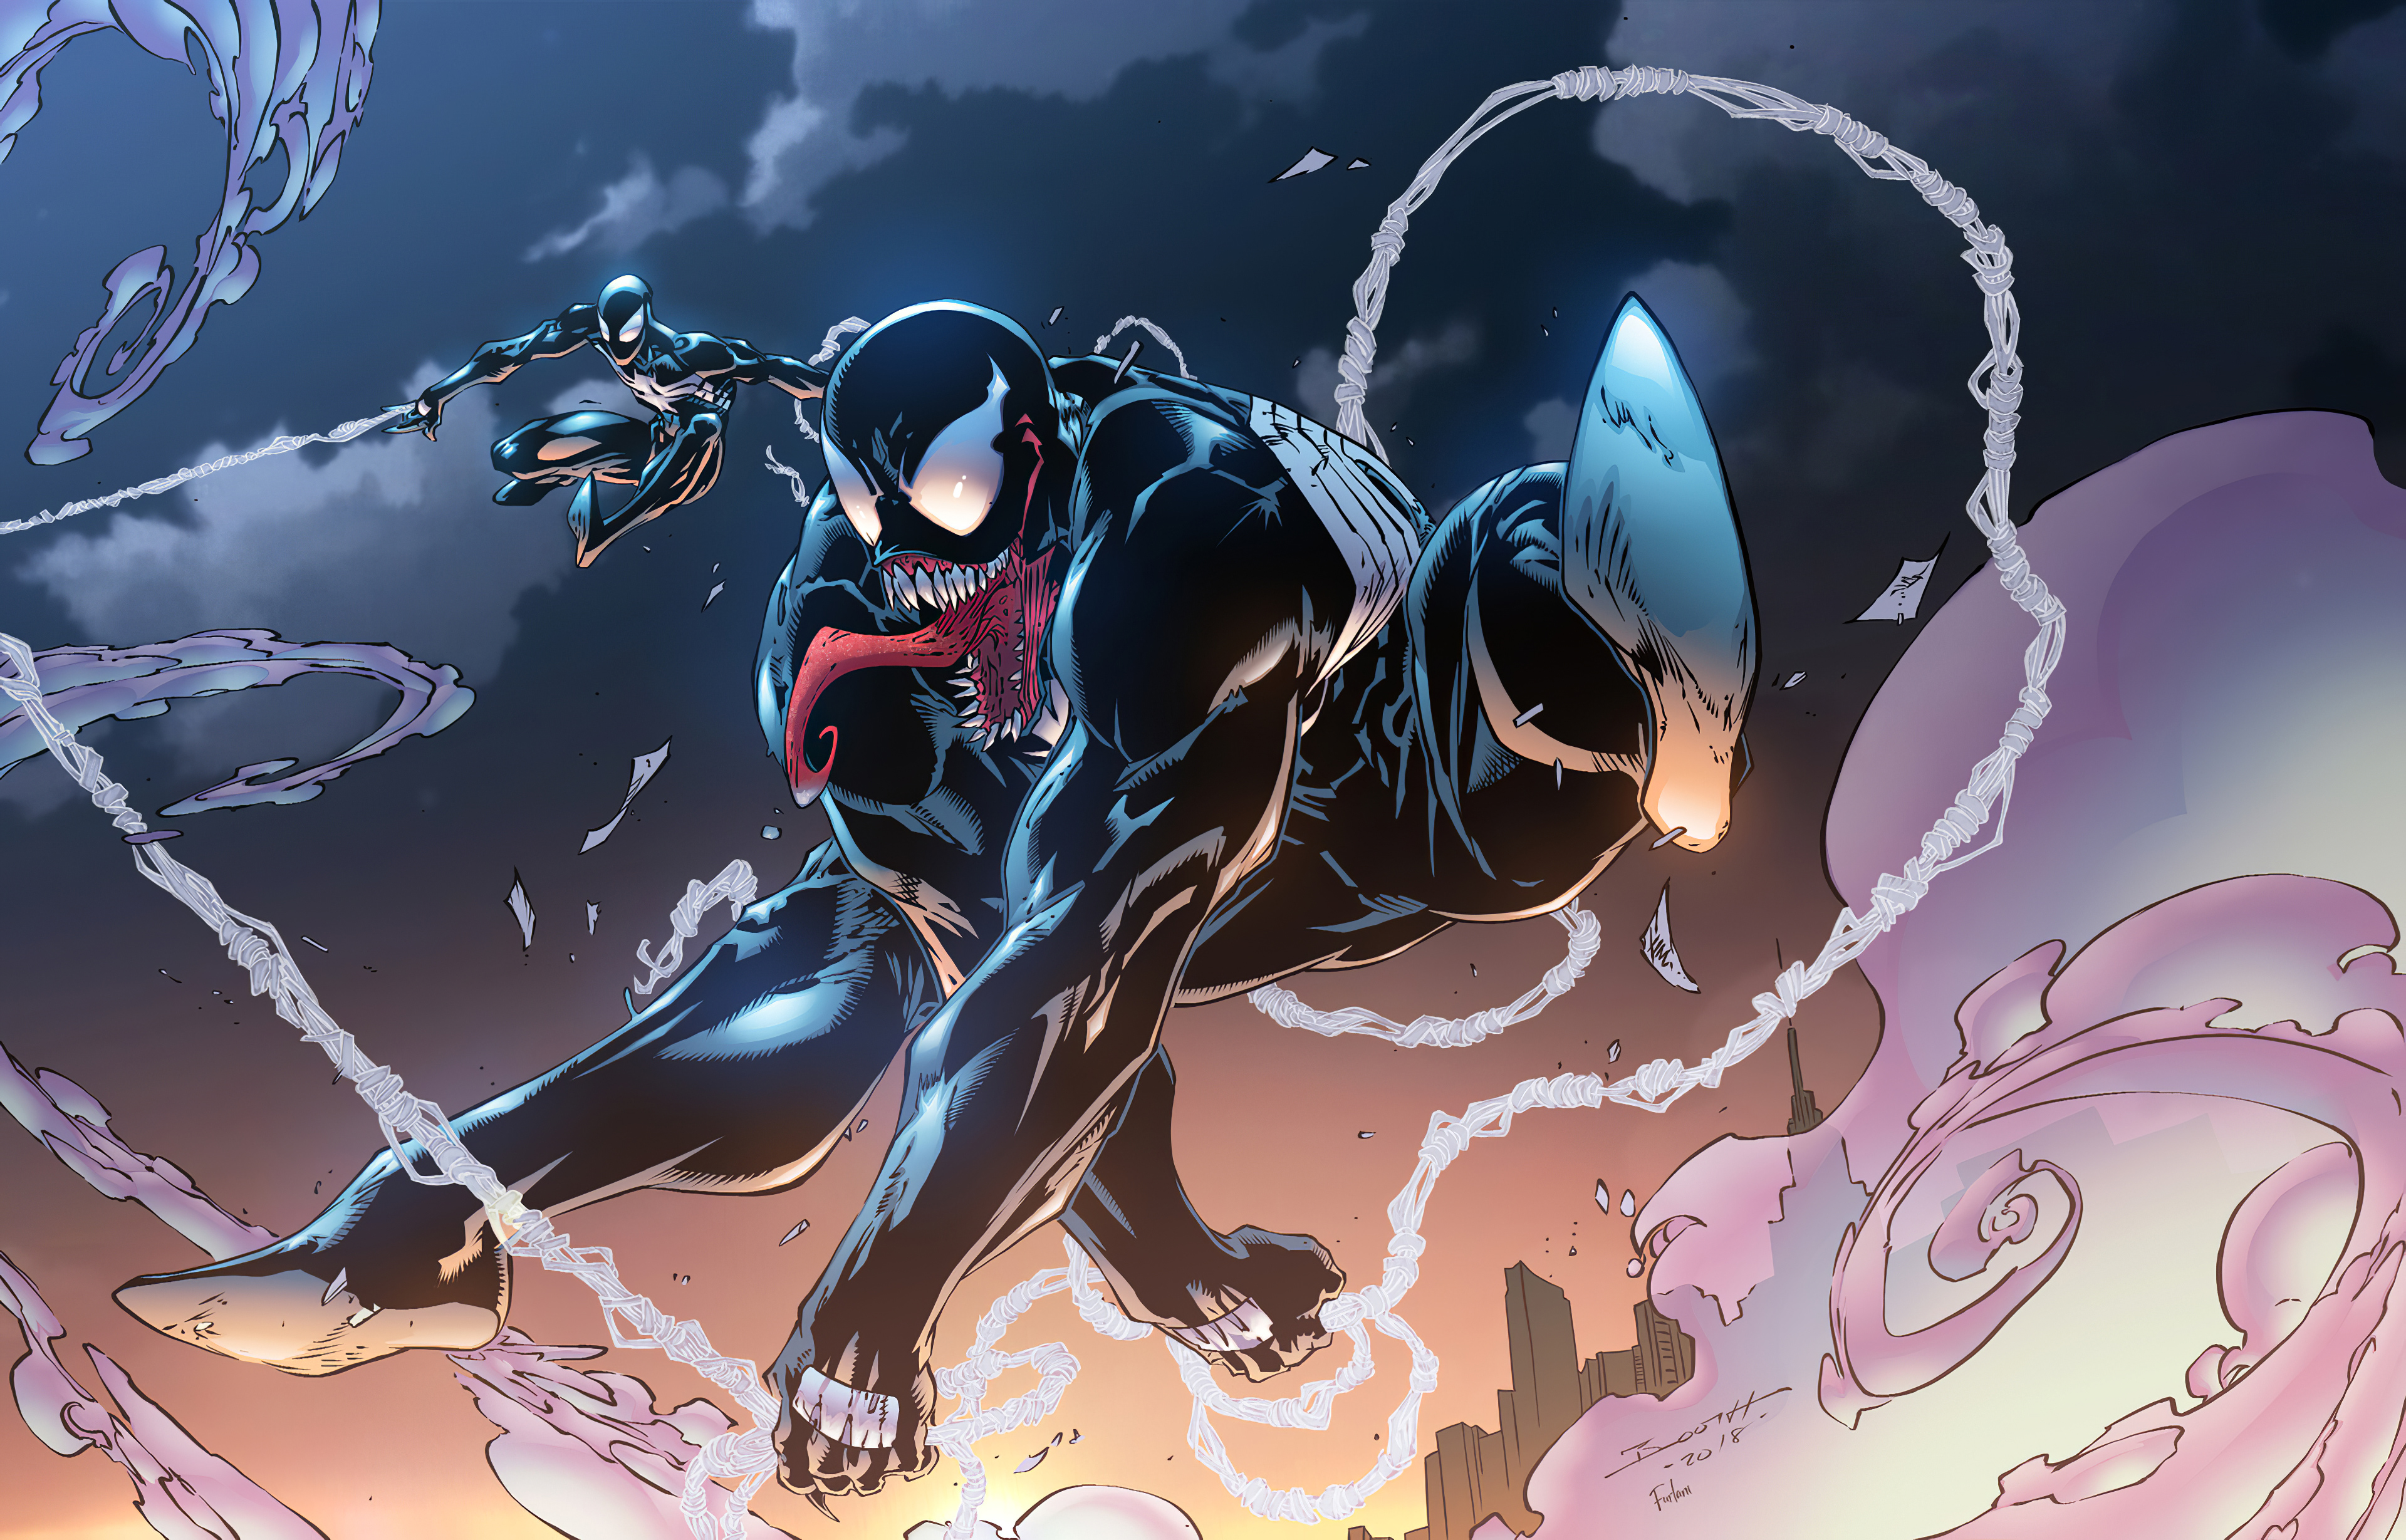 Venom and black spider-man - Venom and black spider-man.